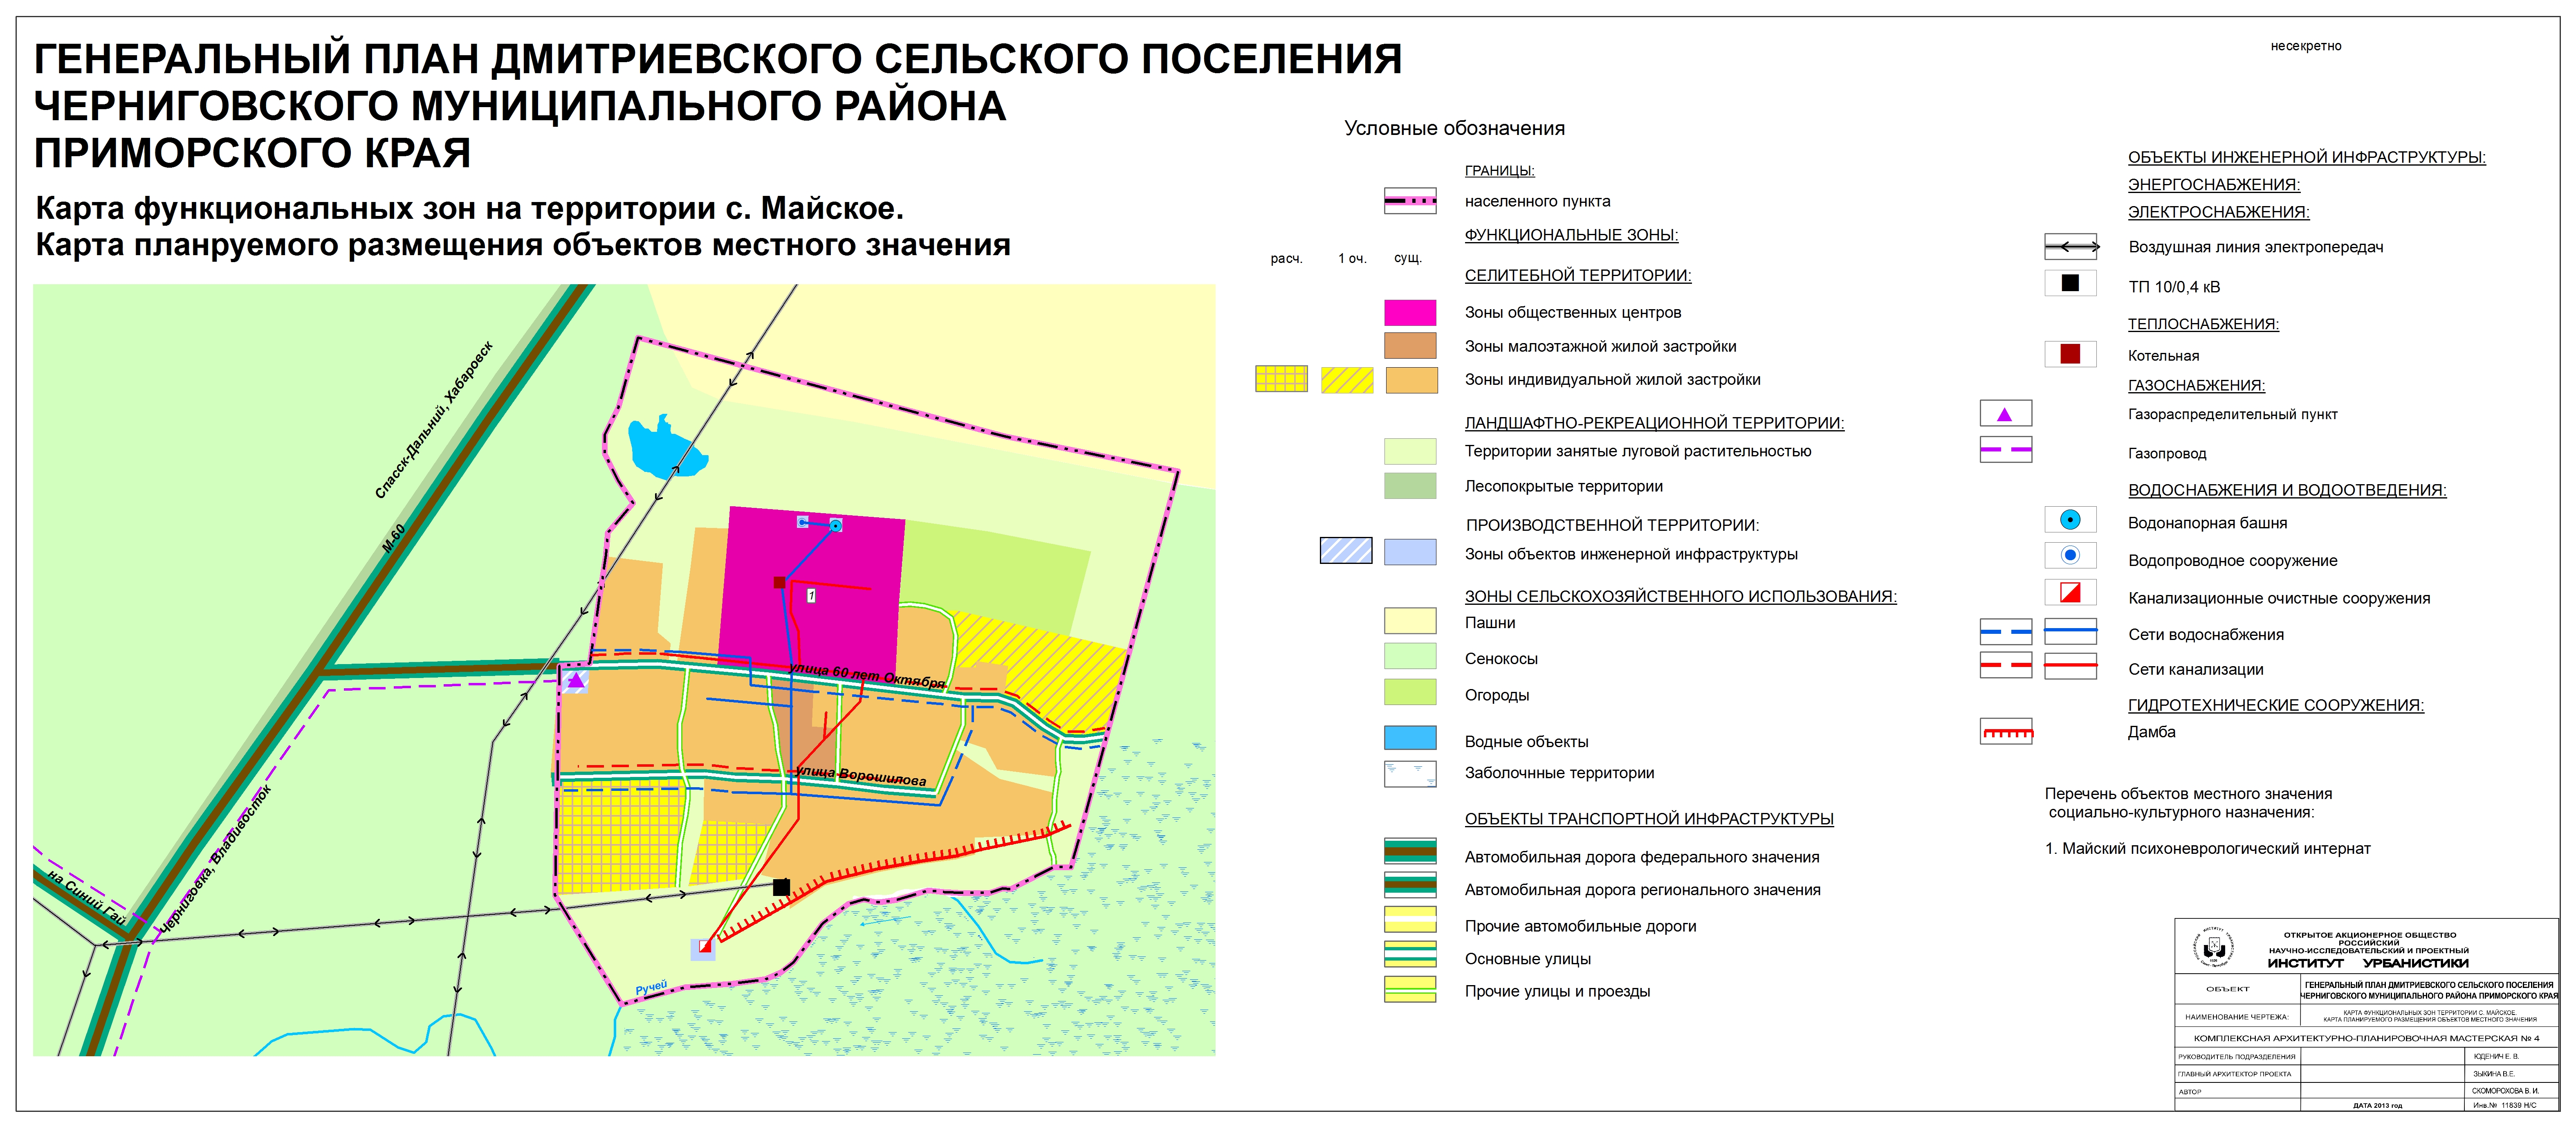 Функциональные зоны города Ярославля